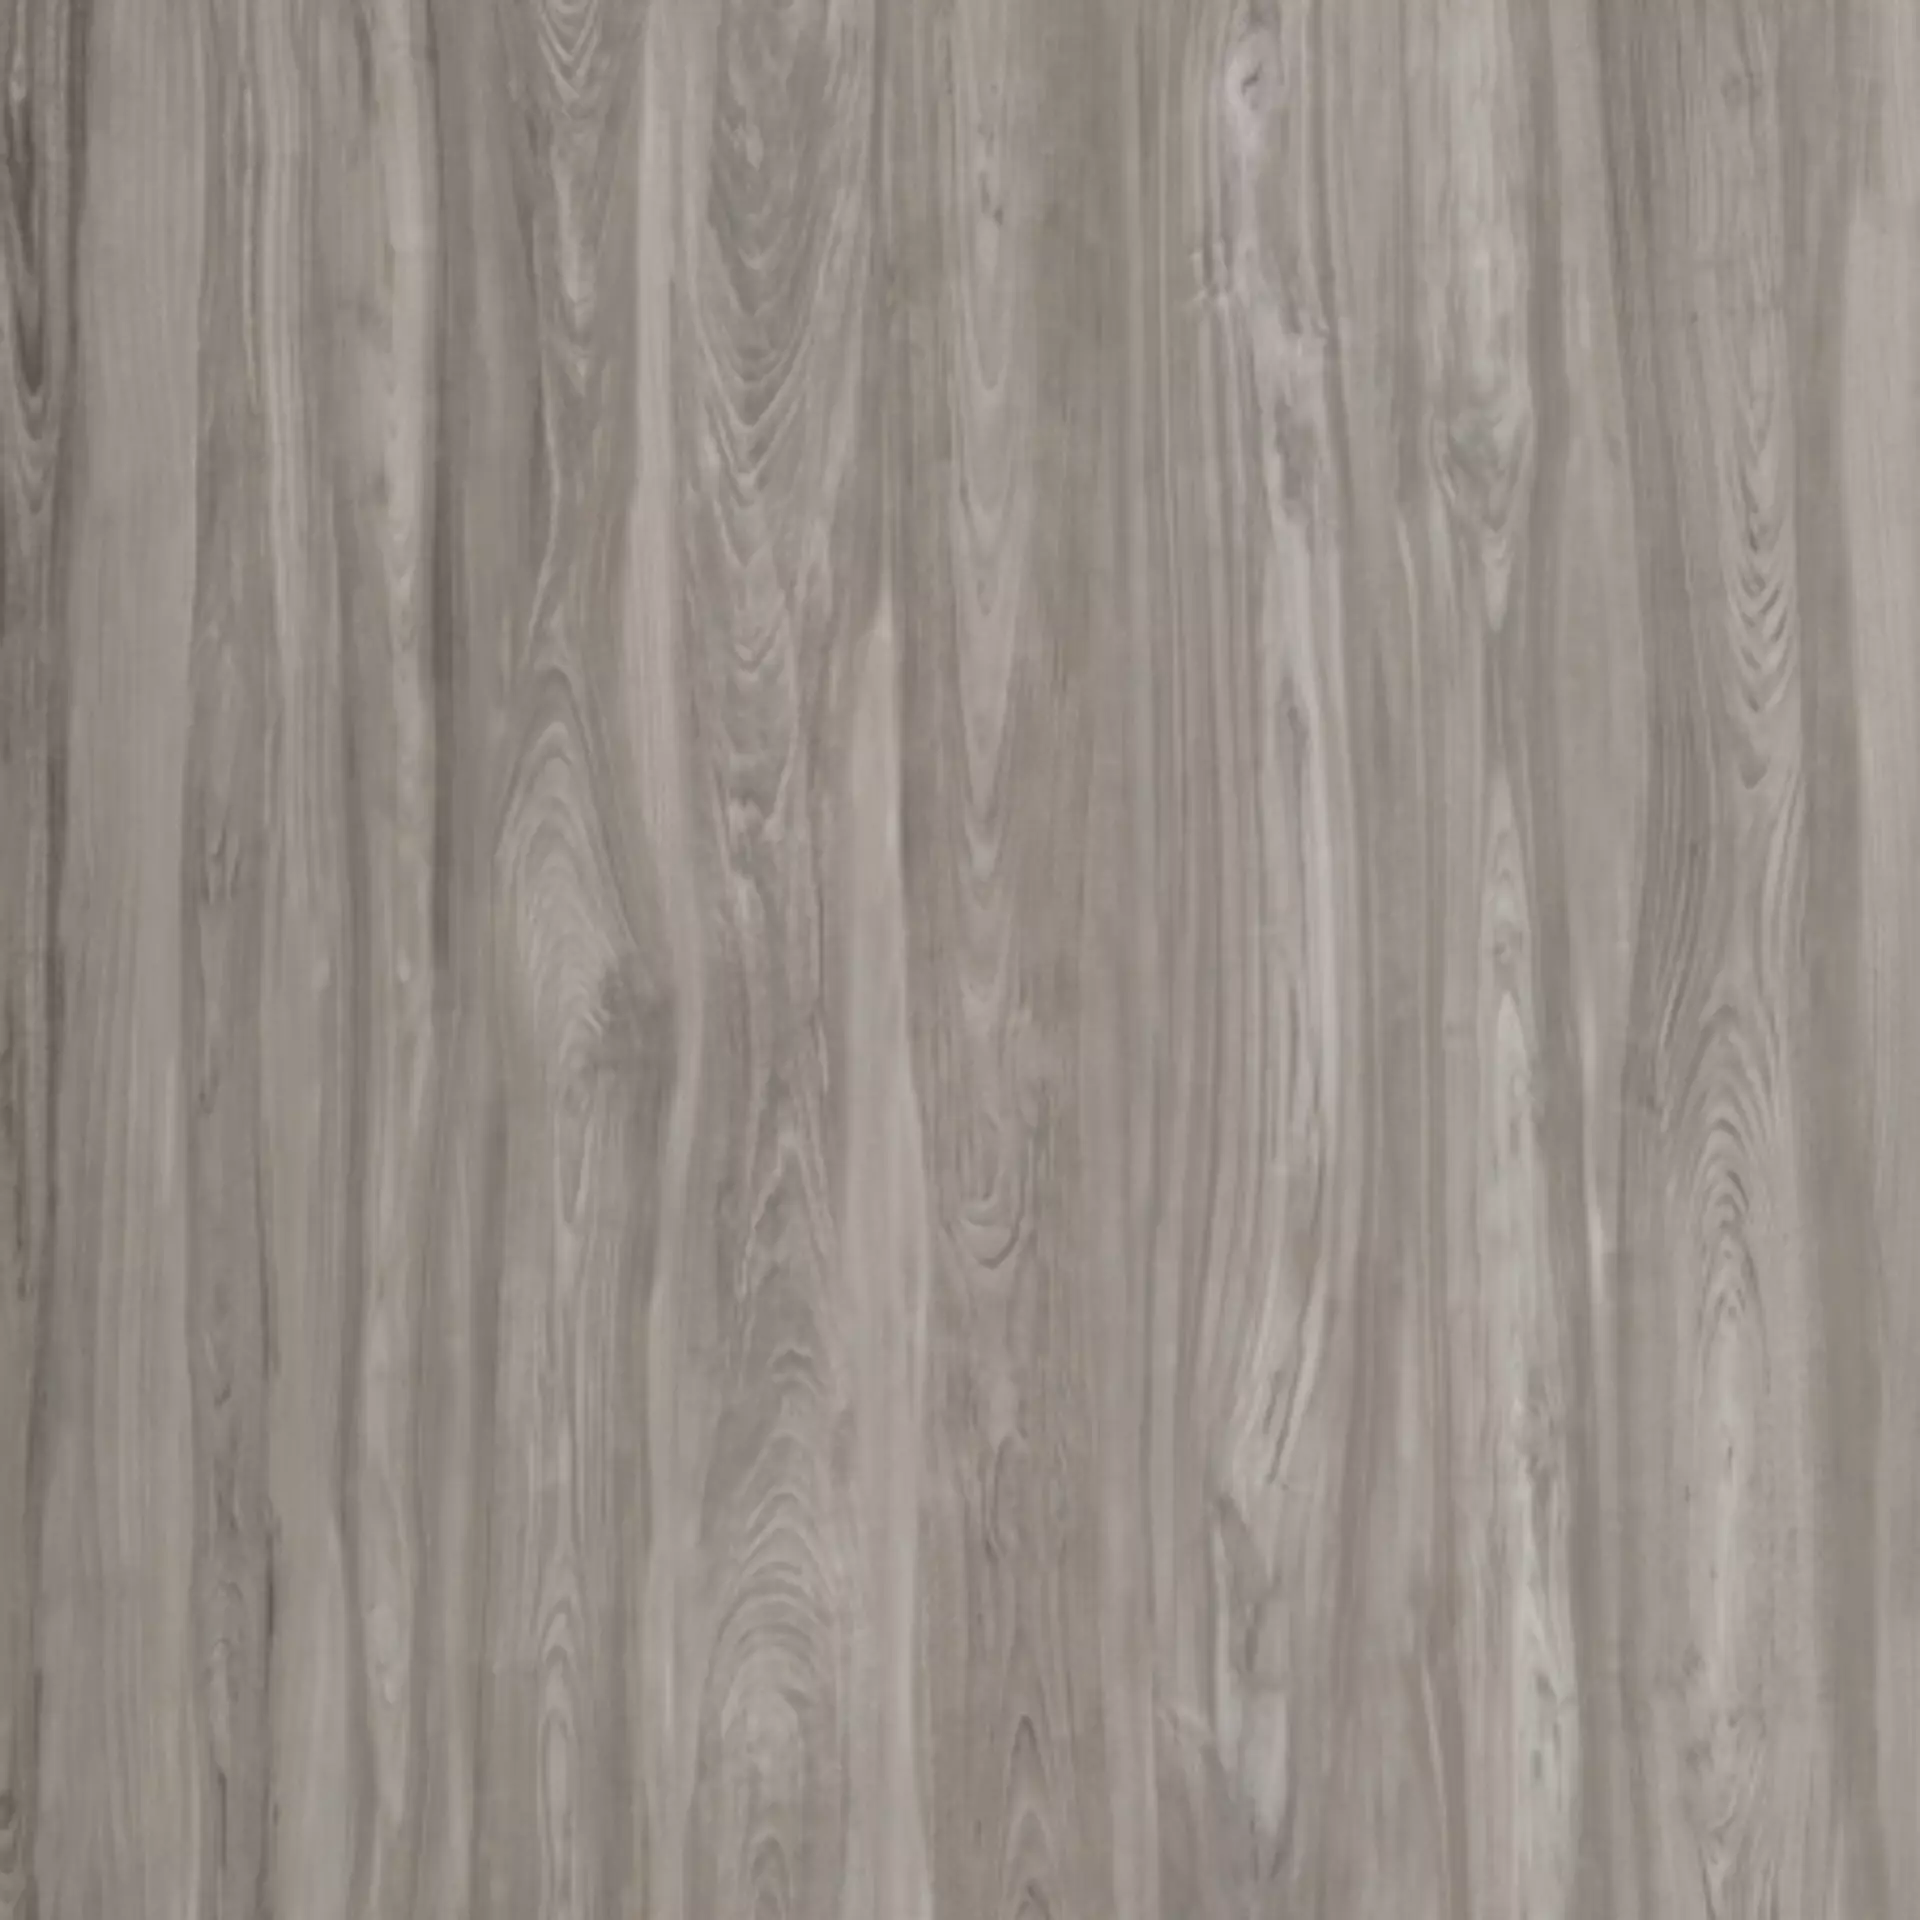 Casalgrande Class Wood Grey Naturale – Matt 10460267 60x120cm rectified 9mm